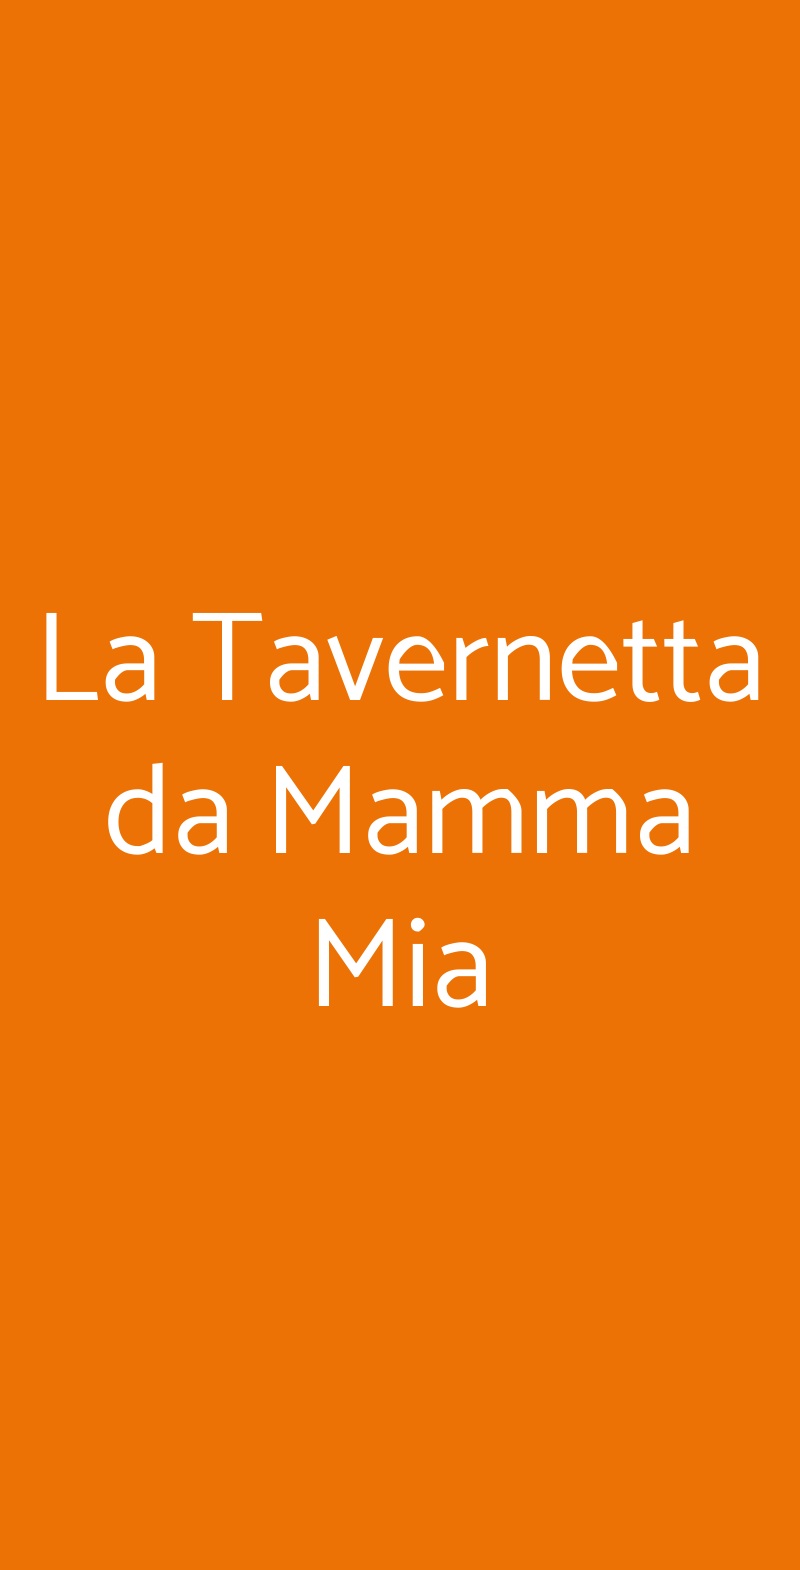 La Tavernetta da Mamma Mia Celle Ligure menù 1 pagina